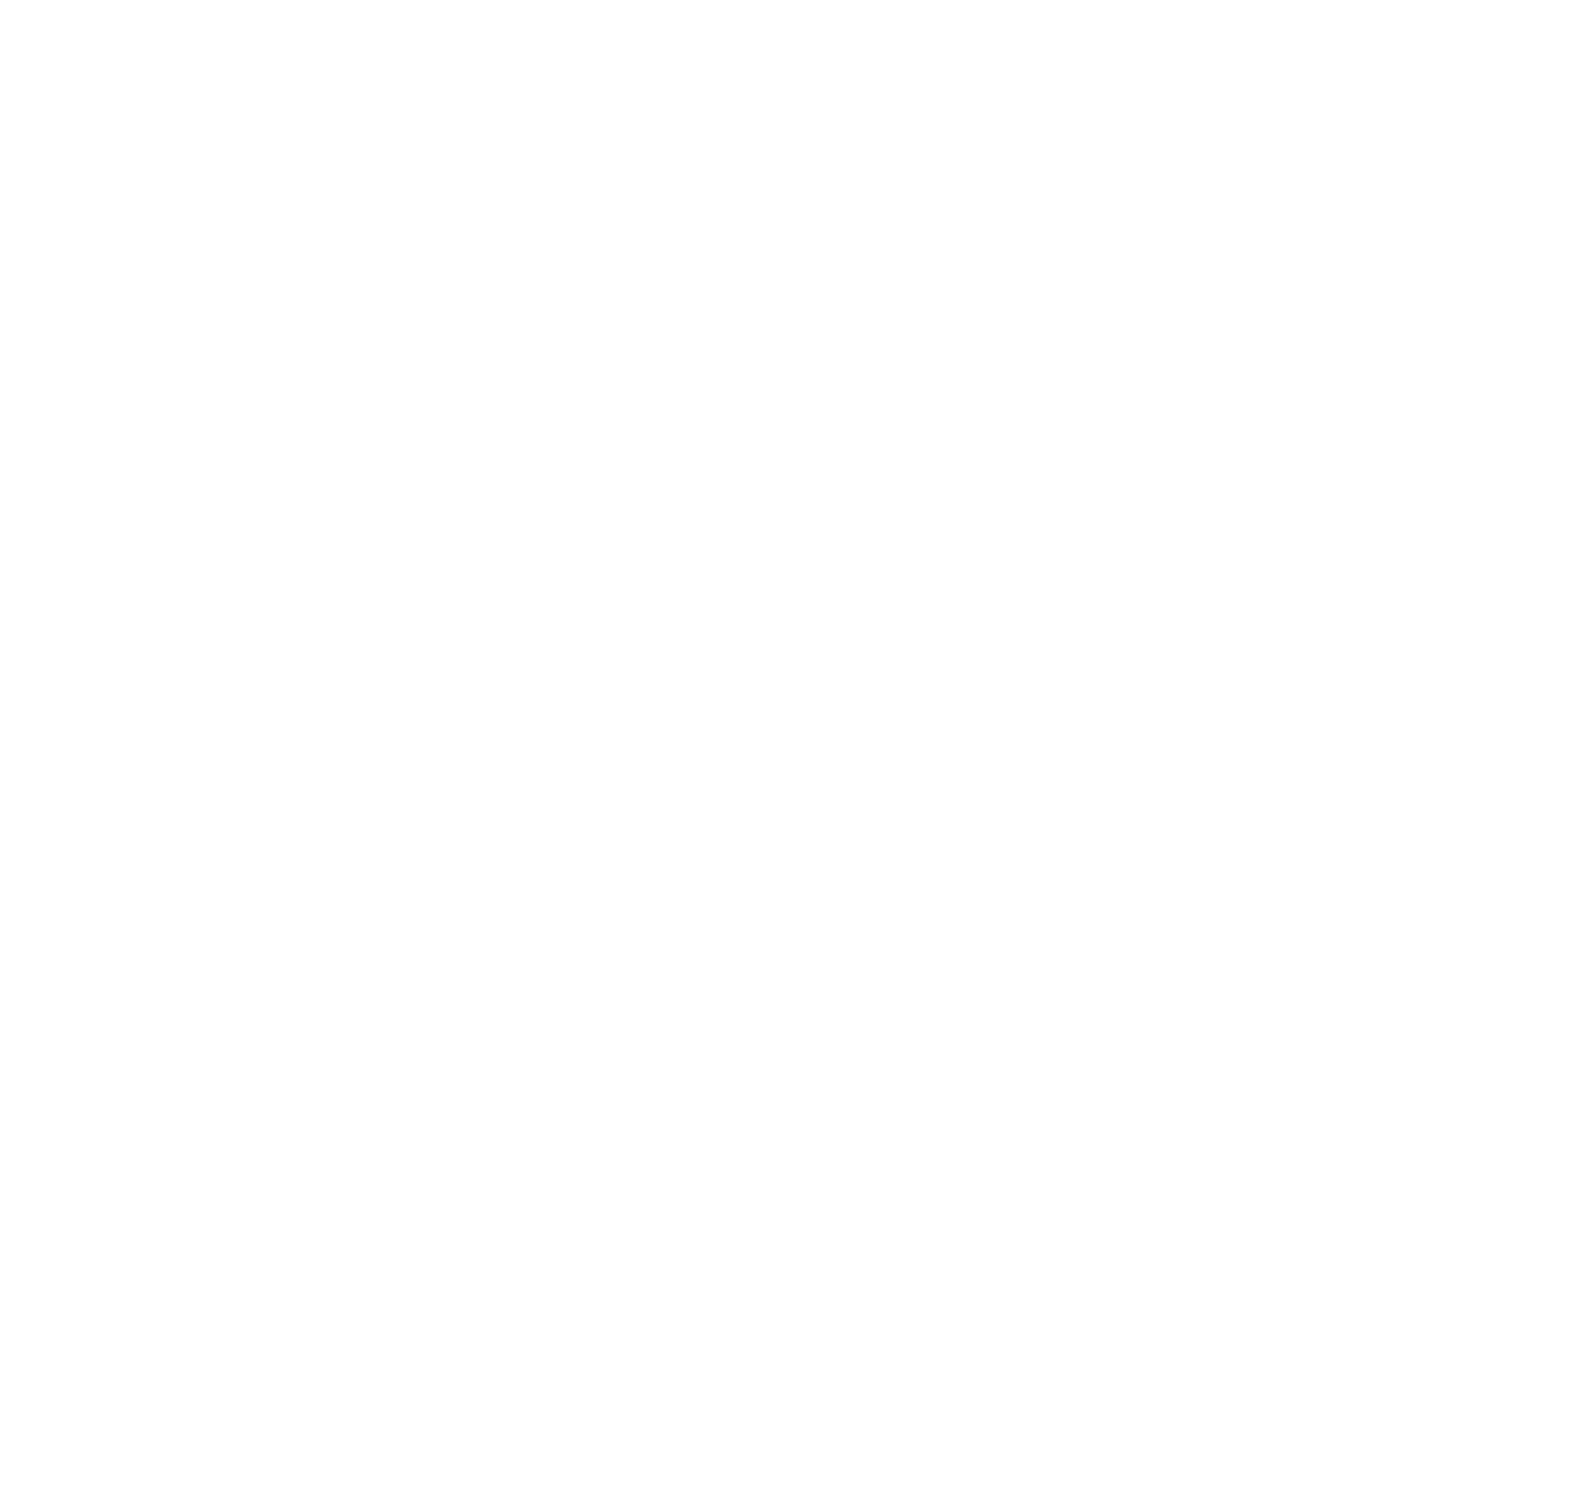 Embecta logo for dark backgrounds (transparent PNG)